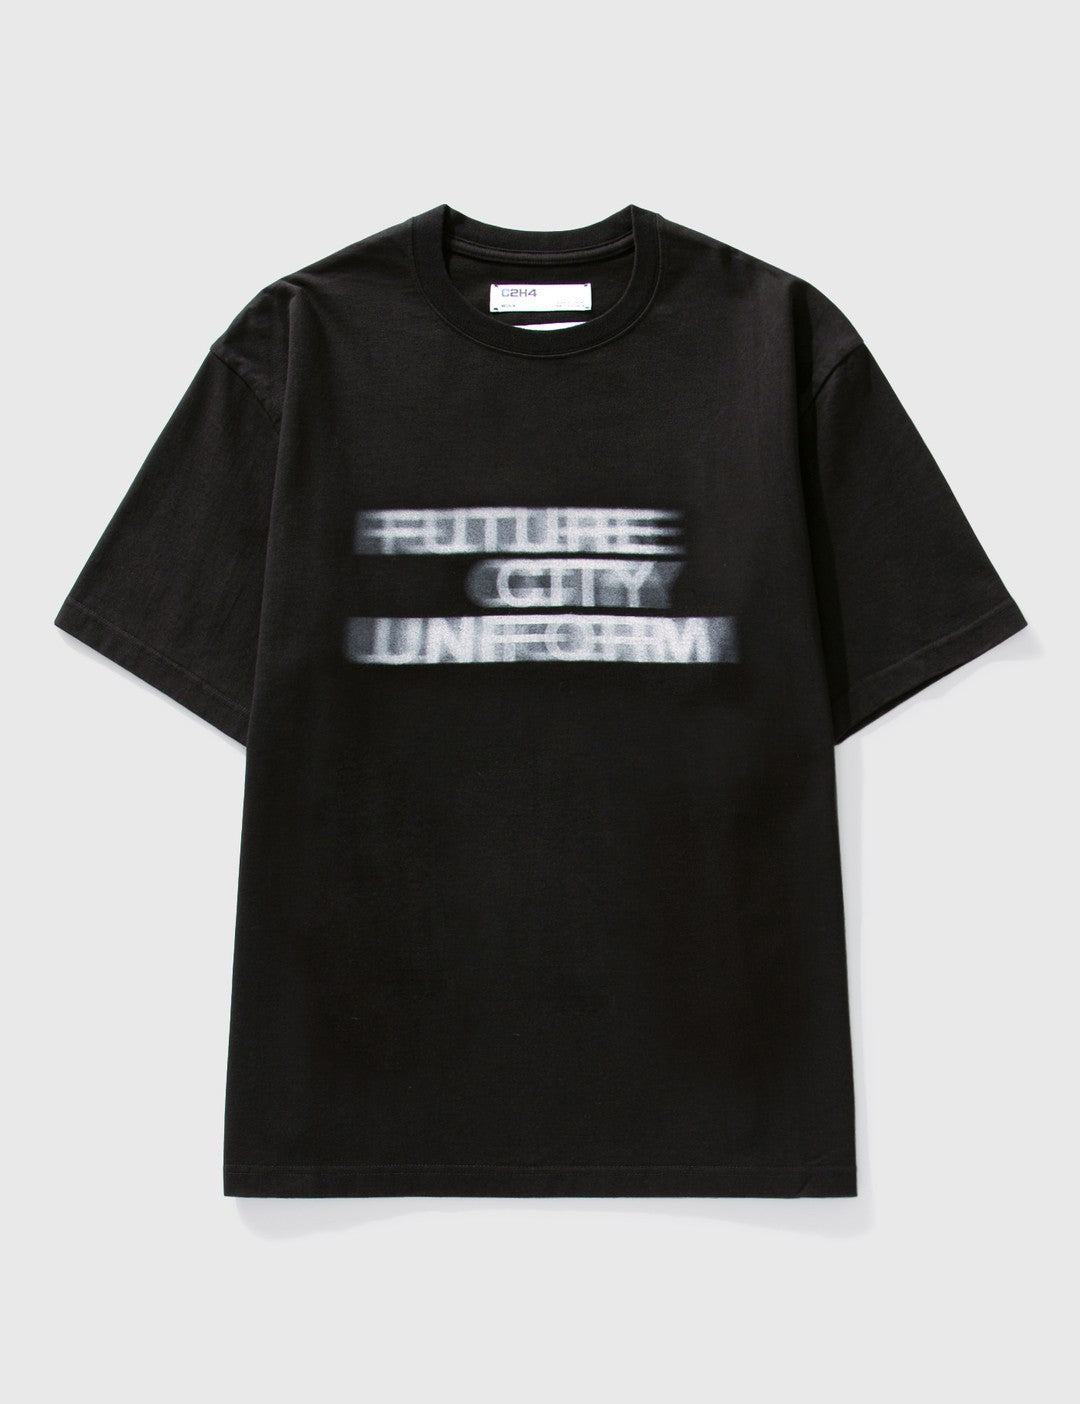 Future City Uniform T-Shirt - Black | ONLINE ONLY